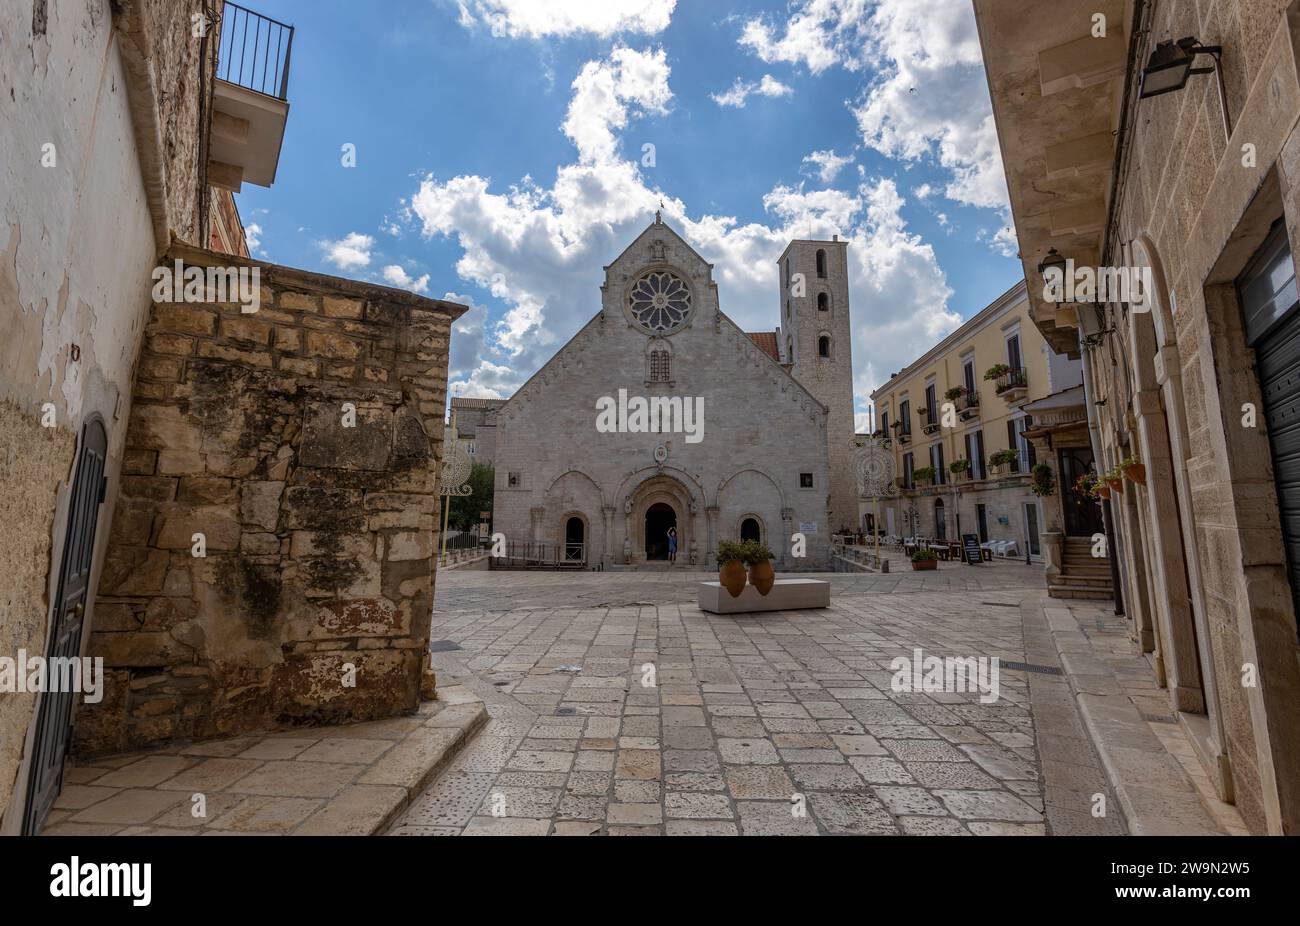 RUVO DI PUGLIA, JULY 10, 2022 - The co-cathedral of Ruvo di Puglia, dedicated to Santa Maria Assunta, in Ruvo di Puglia, Puglia, Italy Stock Photo